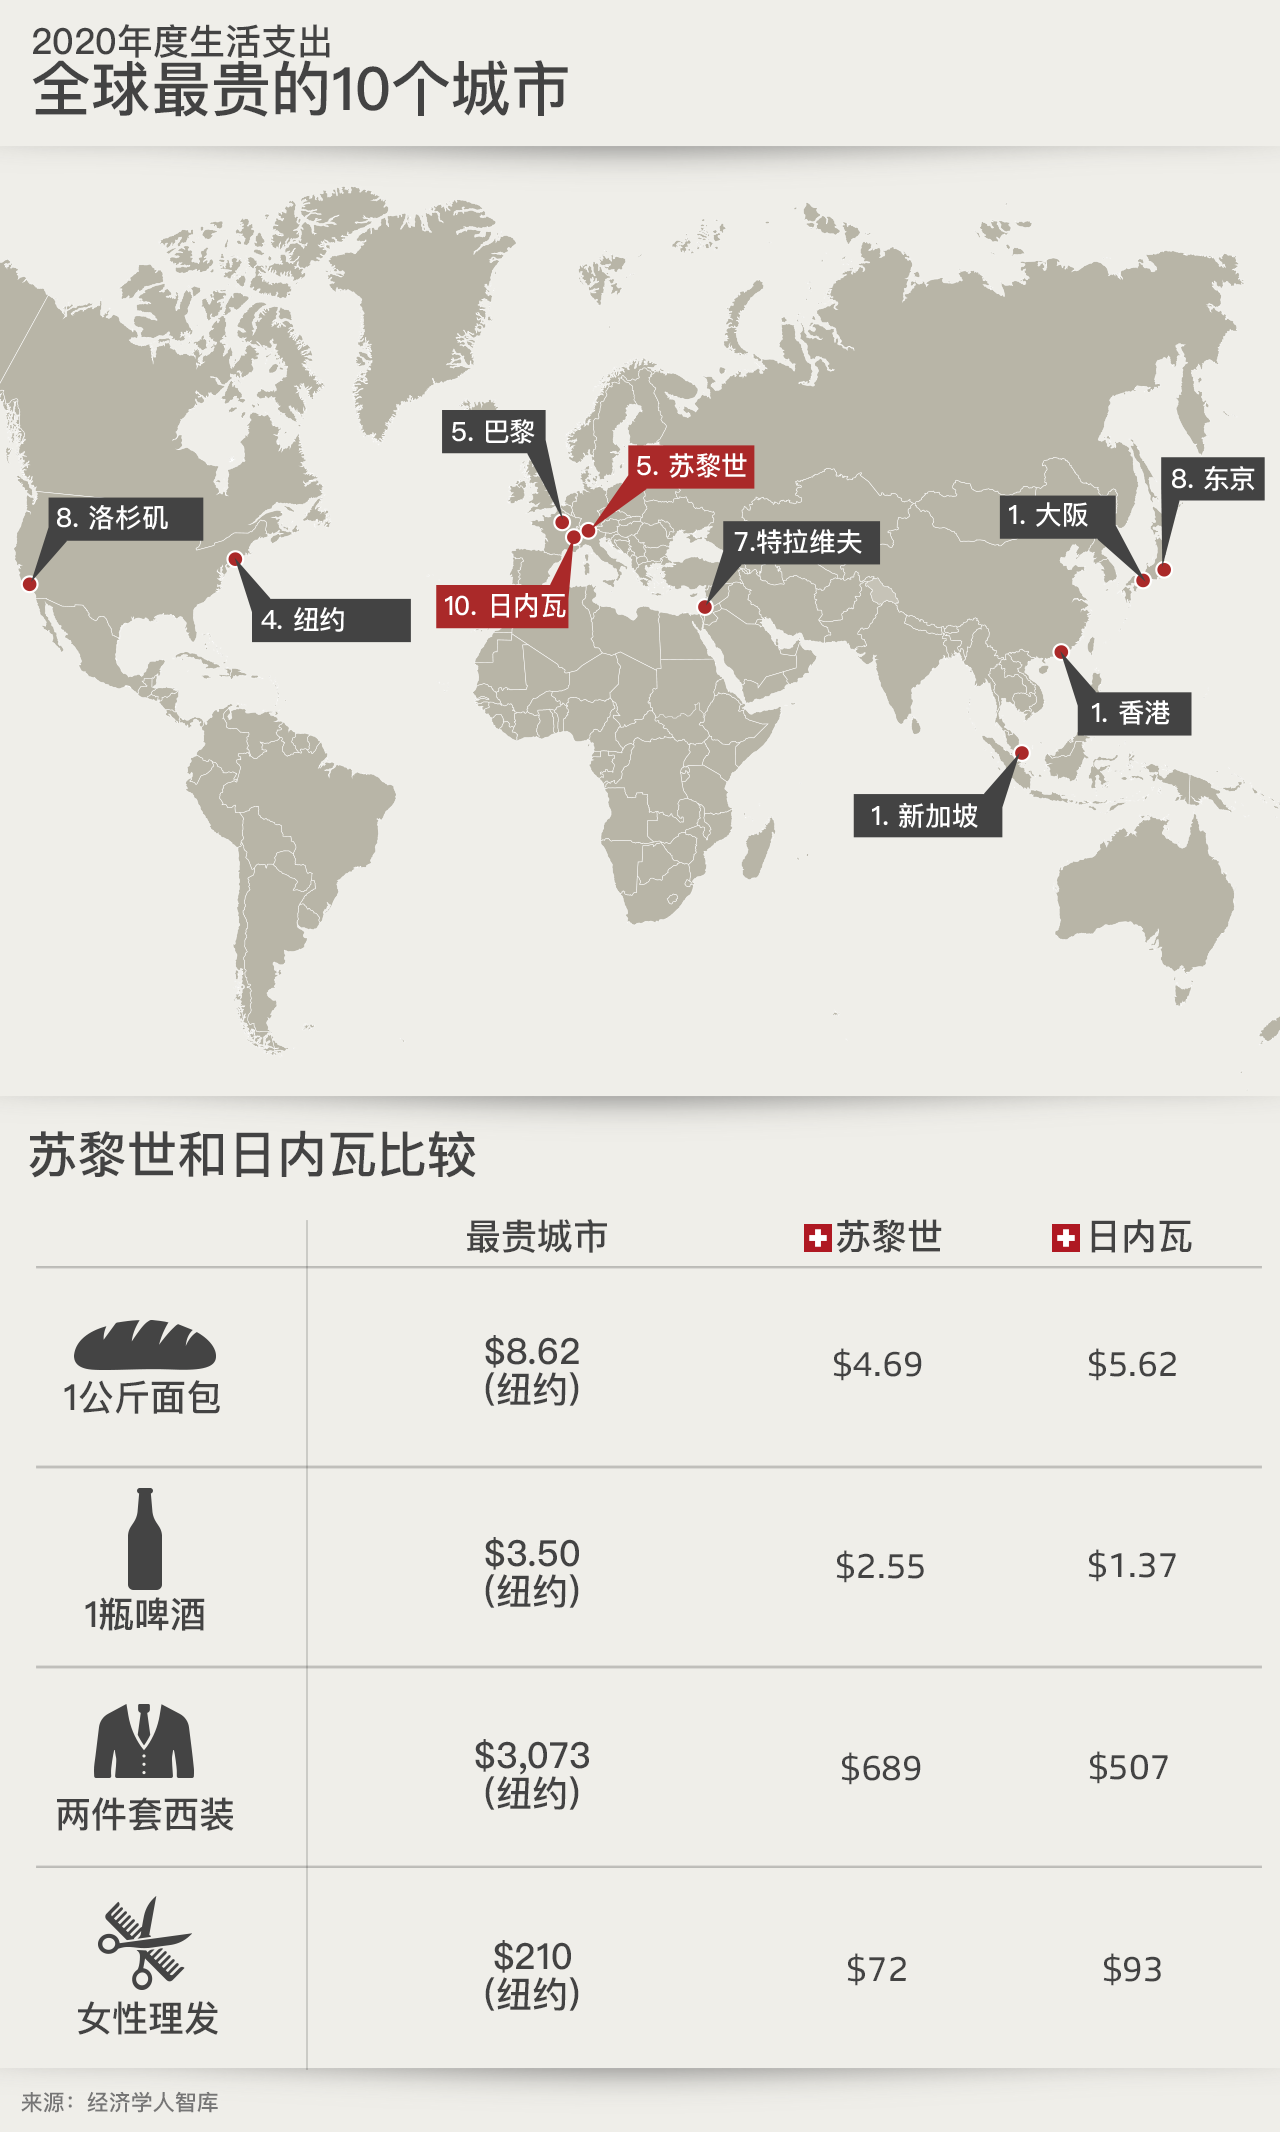 图表 - 全球最贵的10个城市